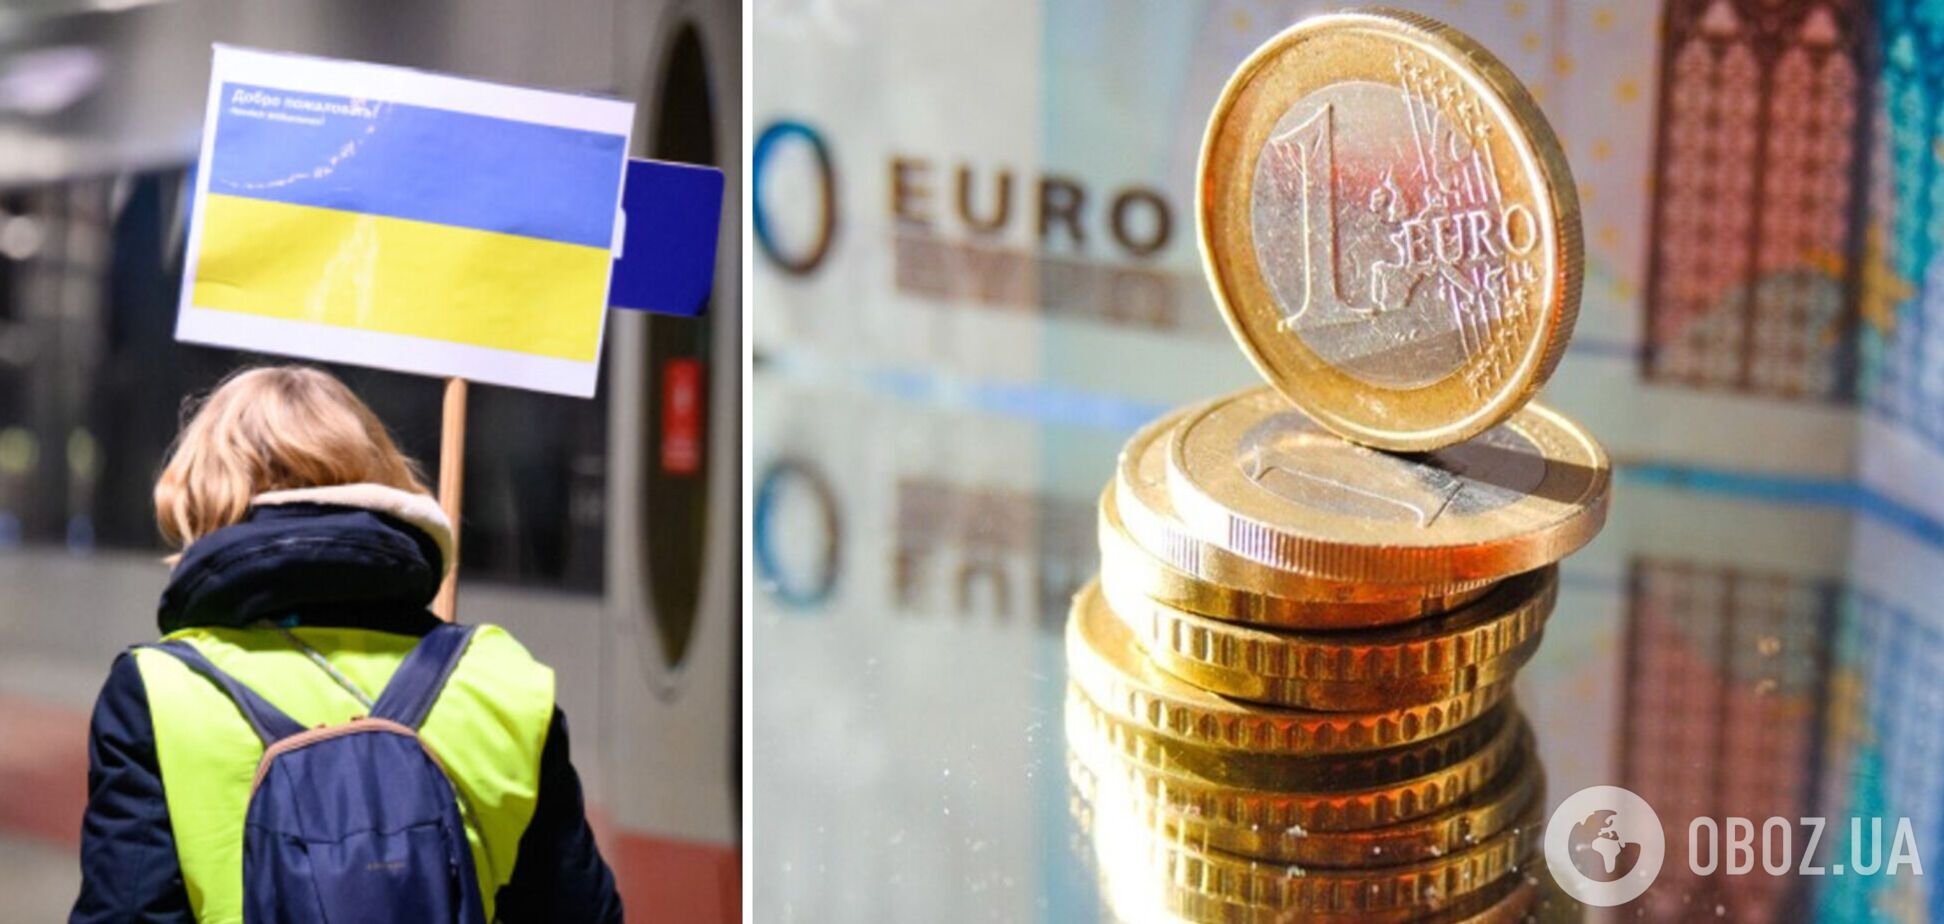 Украинские беженцы могут получить выплату в 150 евро в Италии